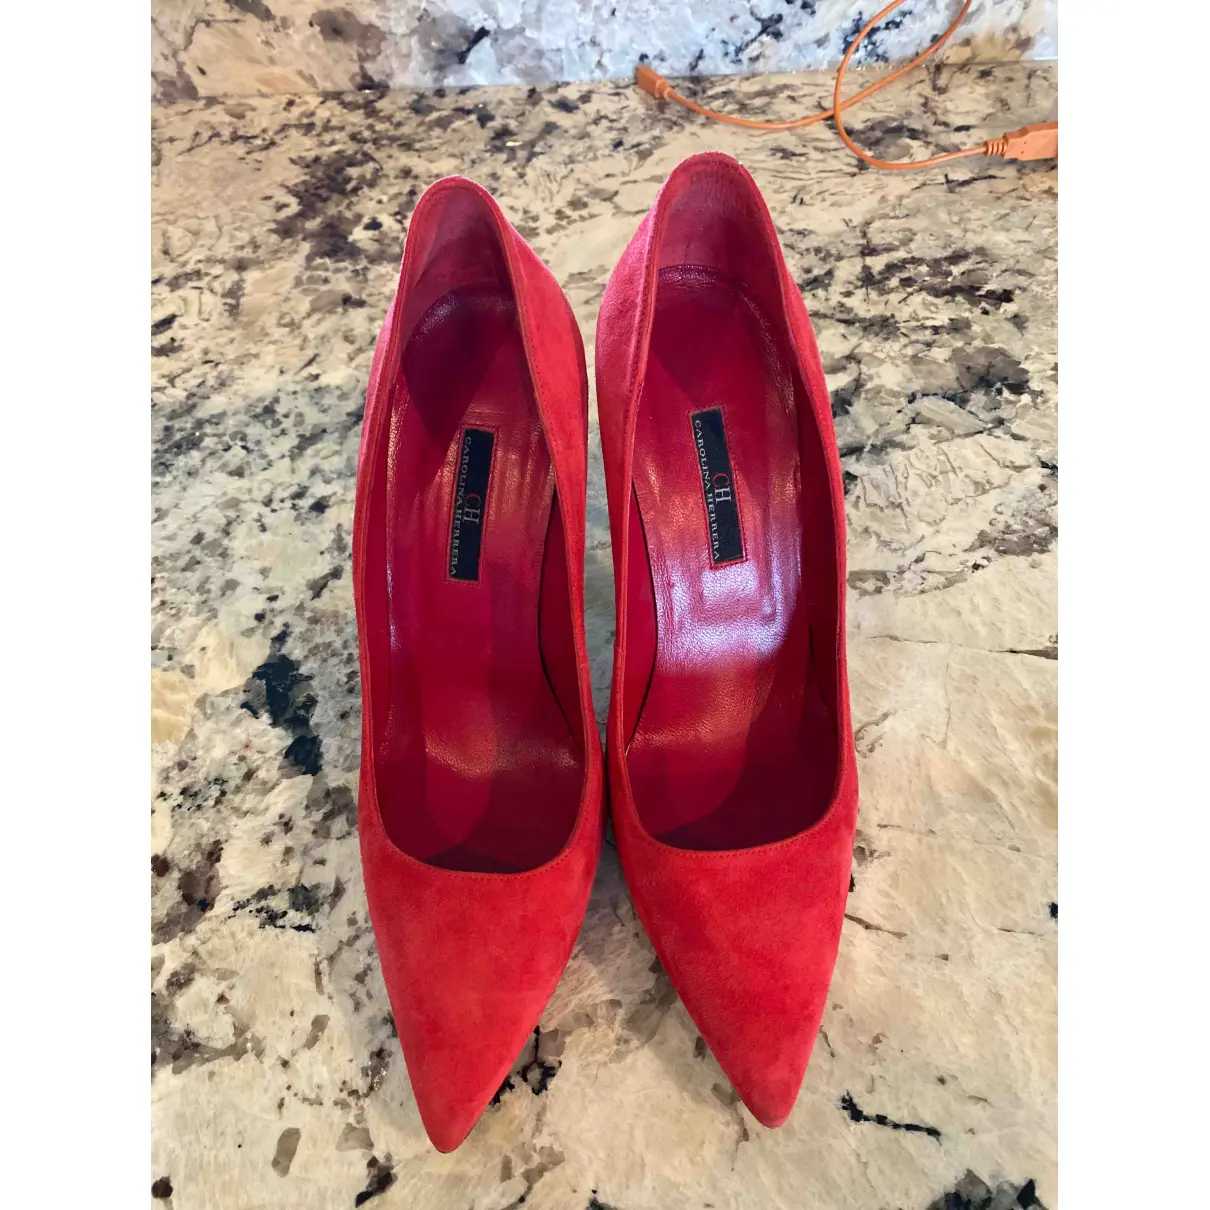 Buy Carolina Herrera Leather heels online